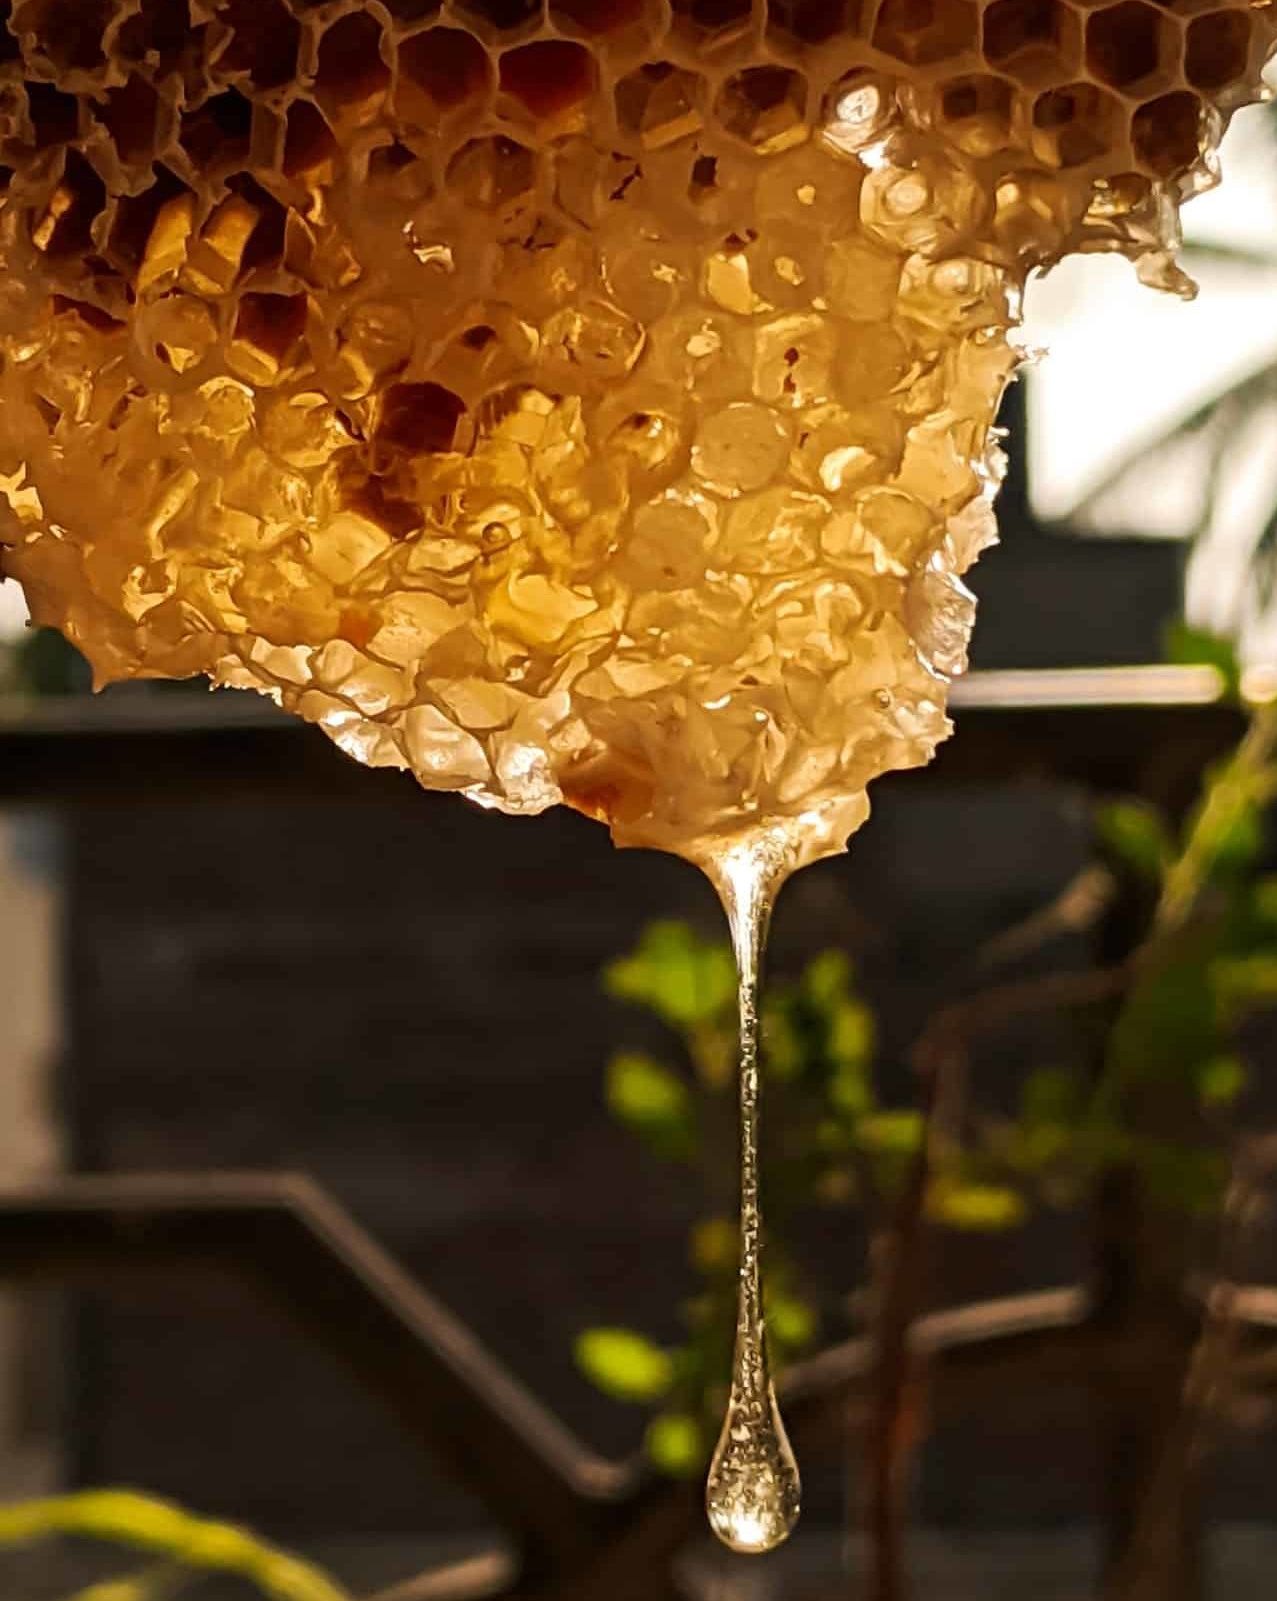 Wie lagert man CBD-haltigen Honig?